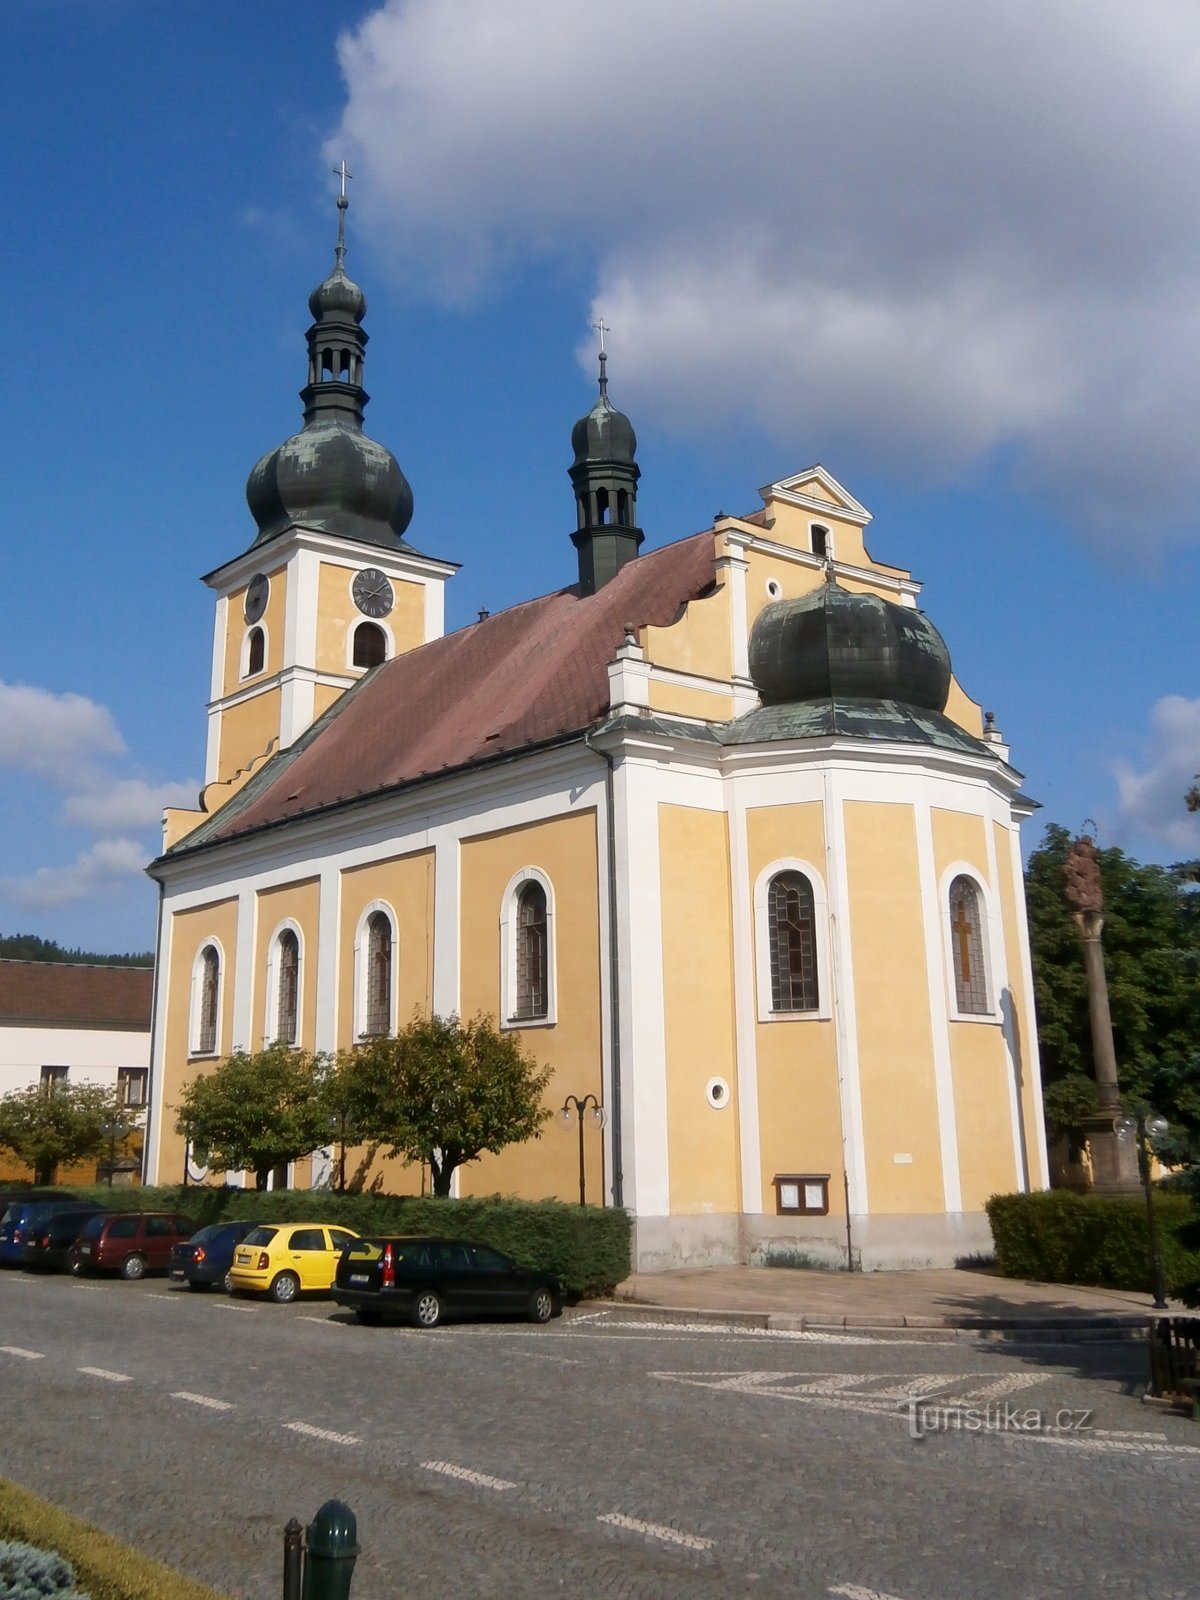 Nhà thờ St. Jakub (Úpice, ngày 6.7.2017 tháng XNUMX năm XNUMX)